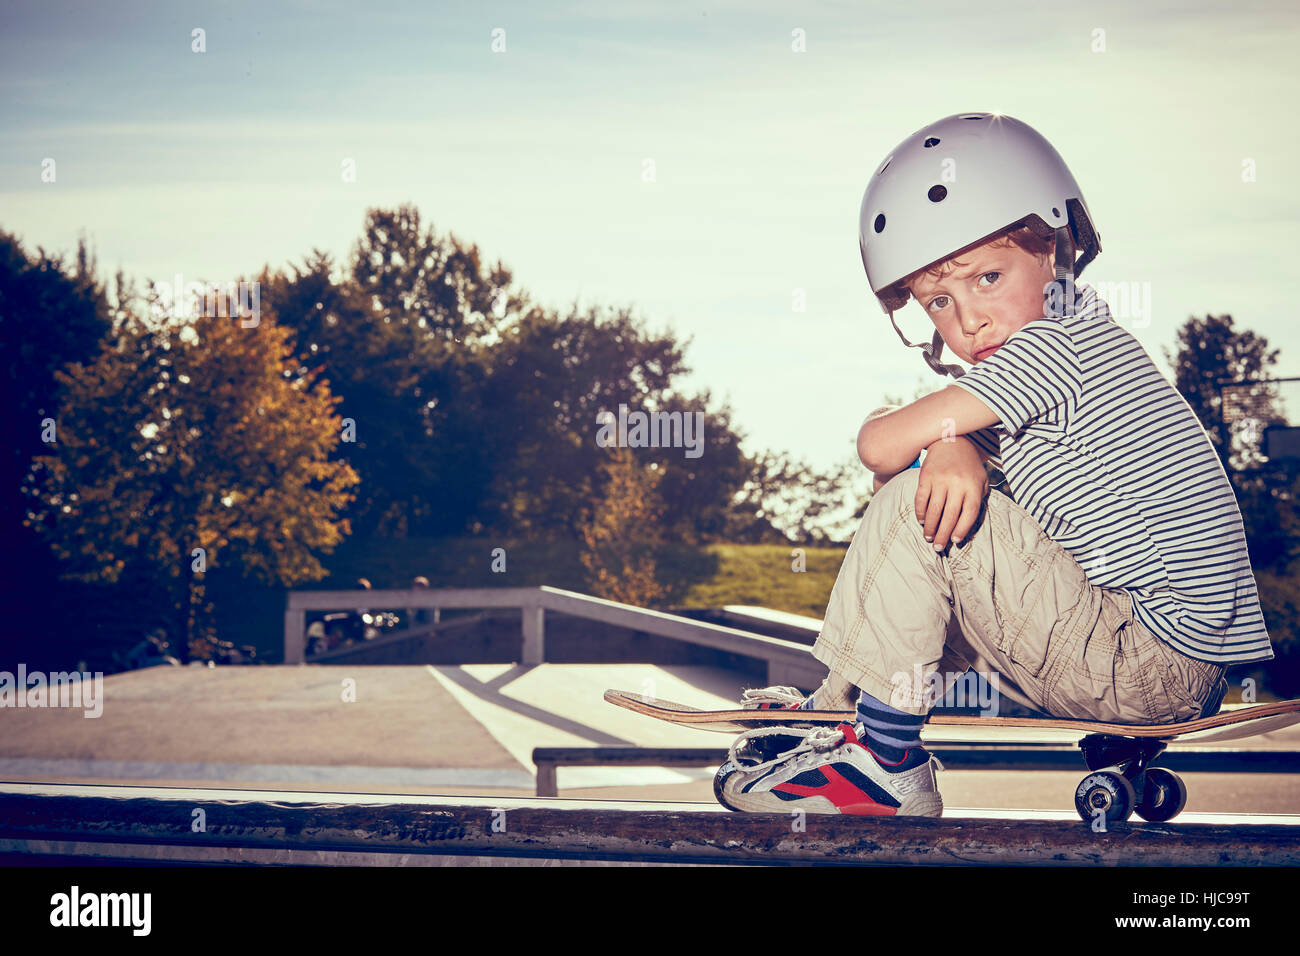 Junge sitzt auf Skateboard im park Stockfoto